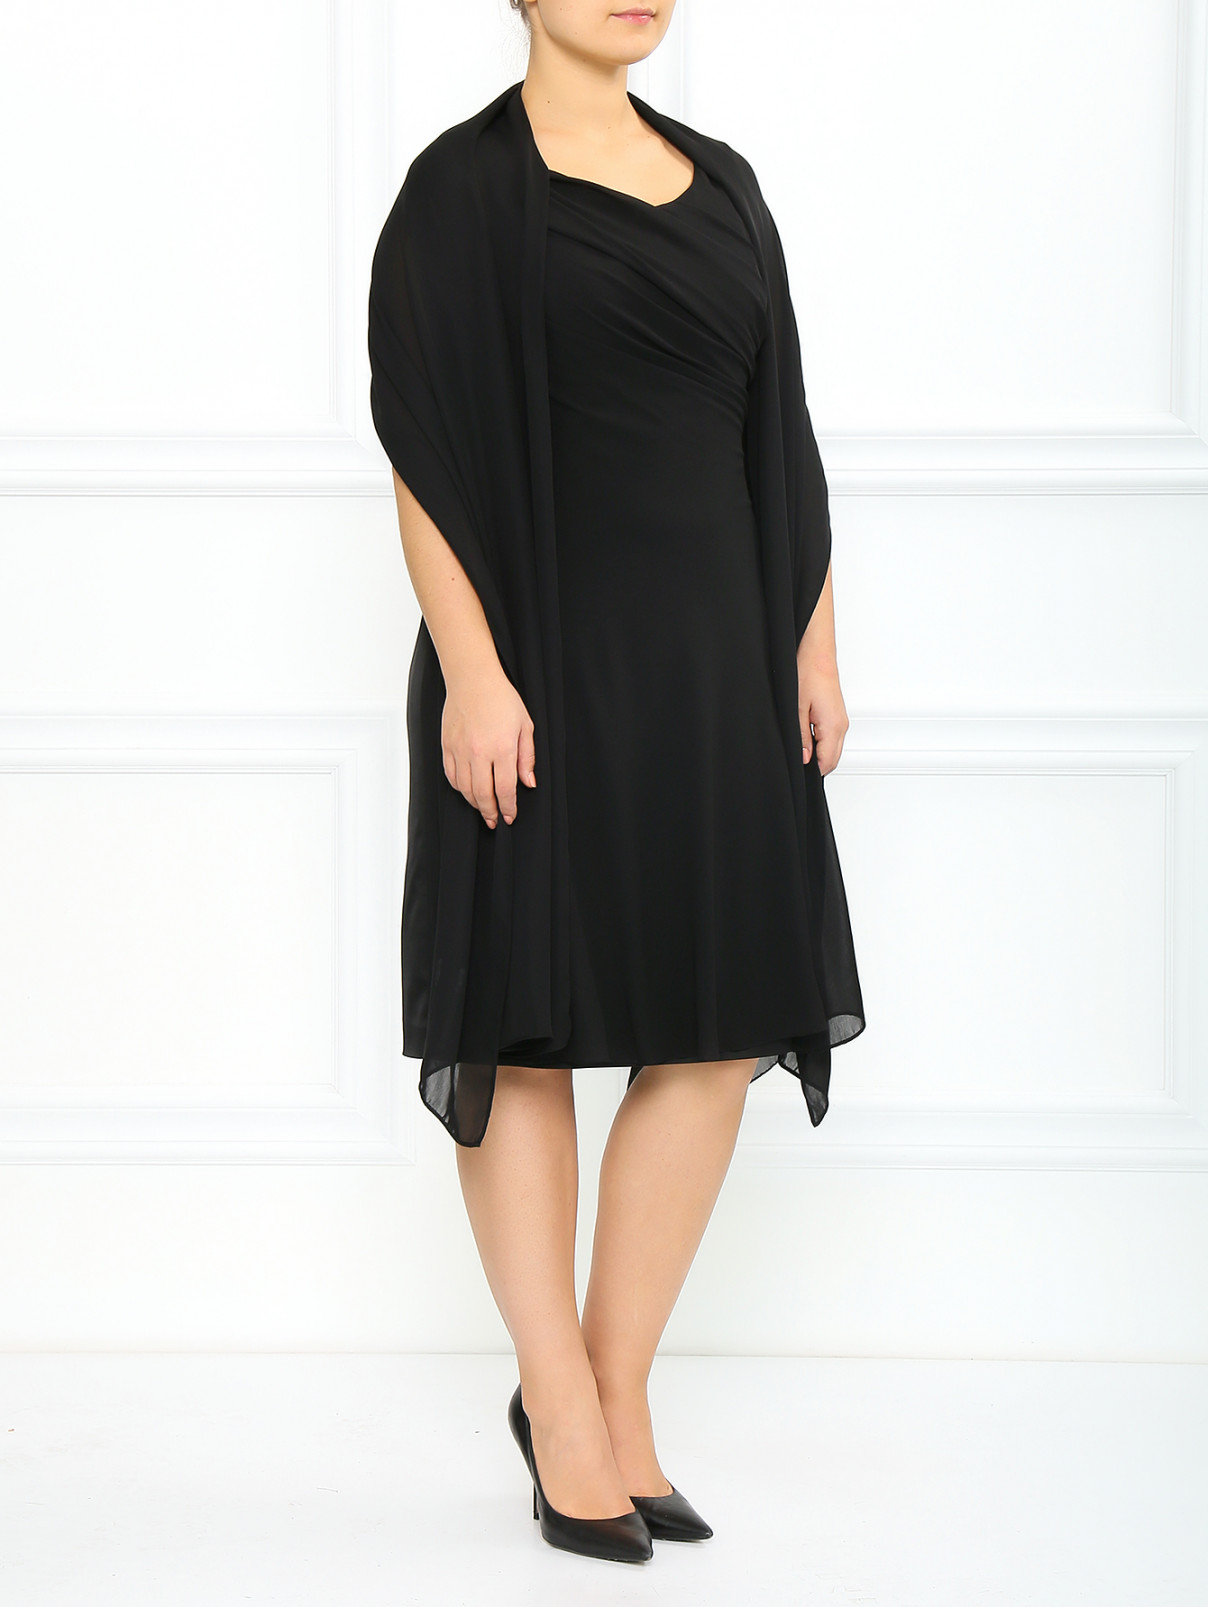 Платье из шелка  с драпировкой с накидкой в комплекте Marina Rinaldi  –  Модель Общий вид  – Цвет:  Черный